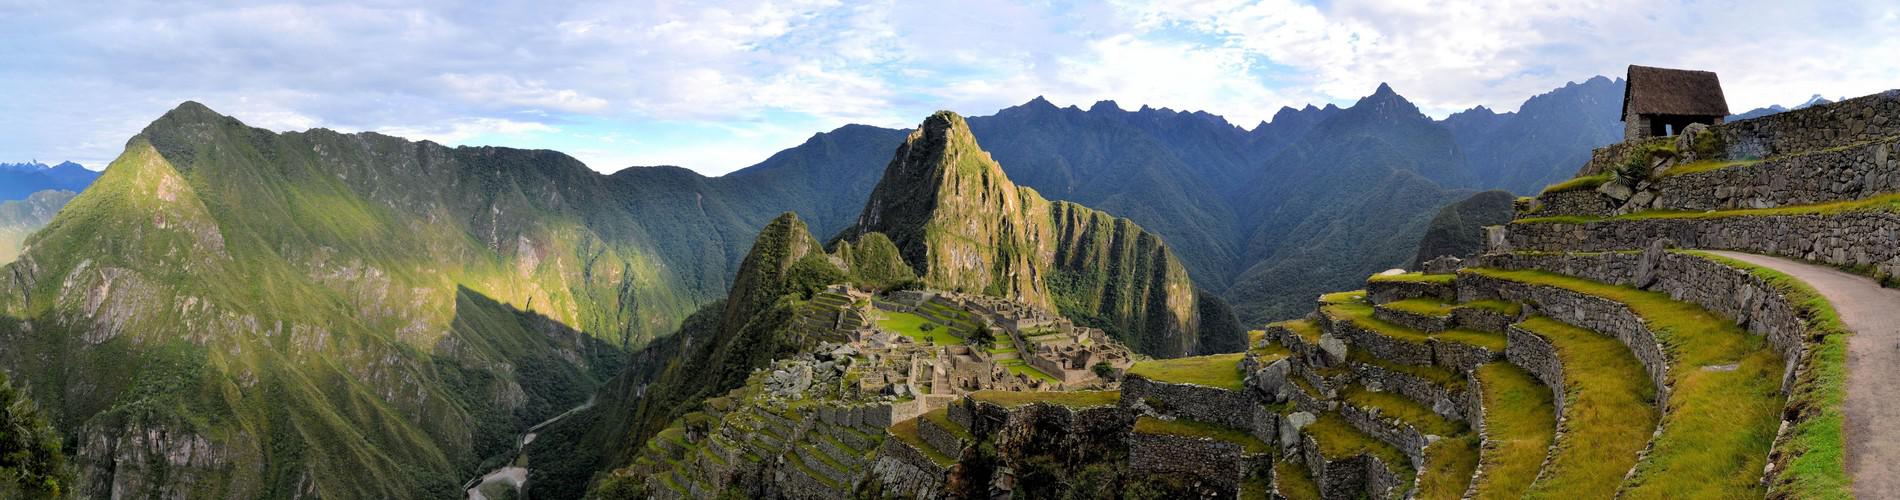 Machu Picchu Mountain Tour